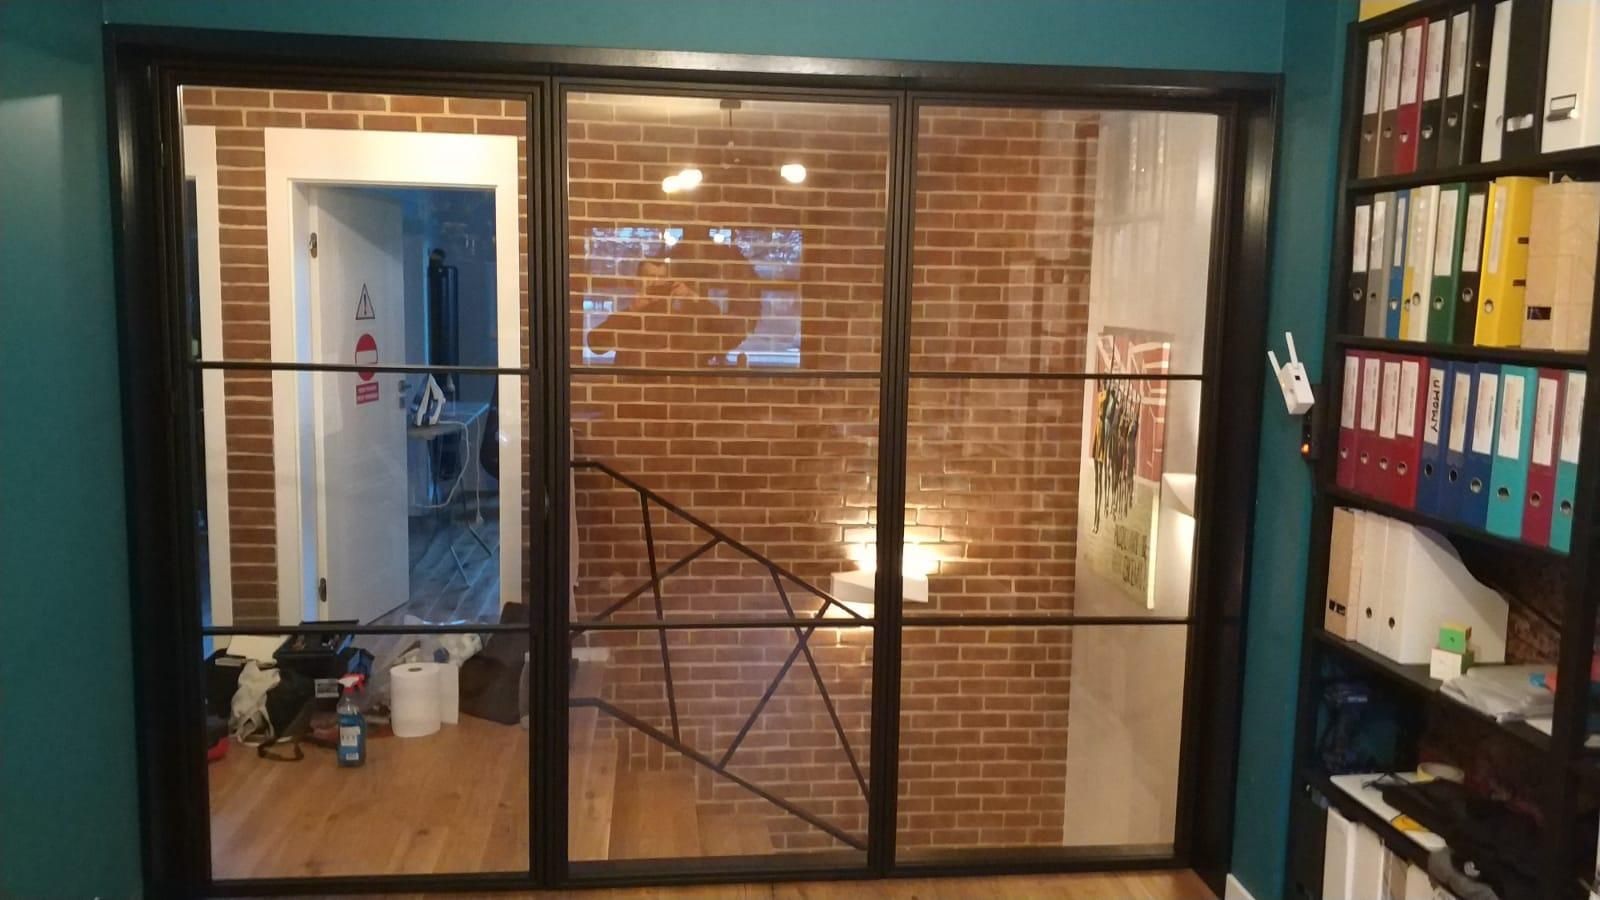 Ścianka ściana metalowa szklana drzwi loft industrial przeszklenie